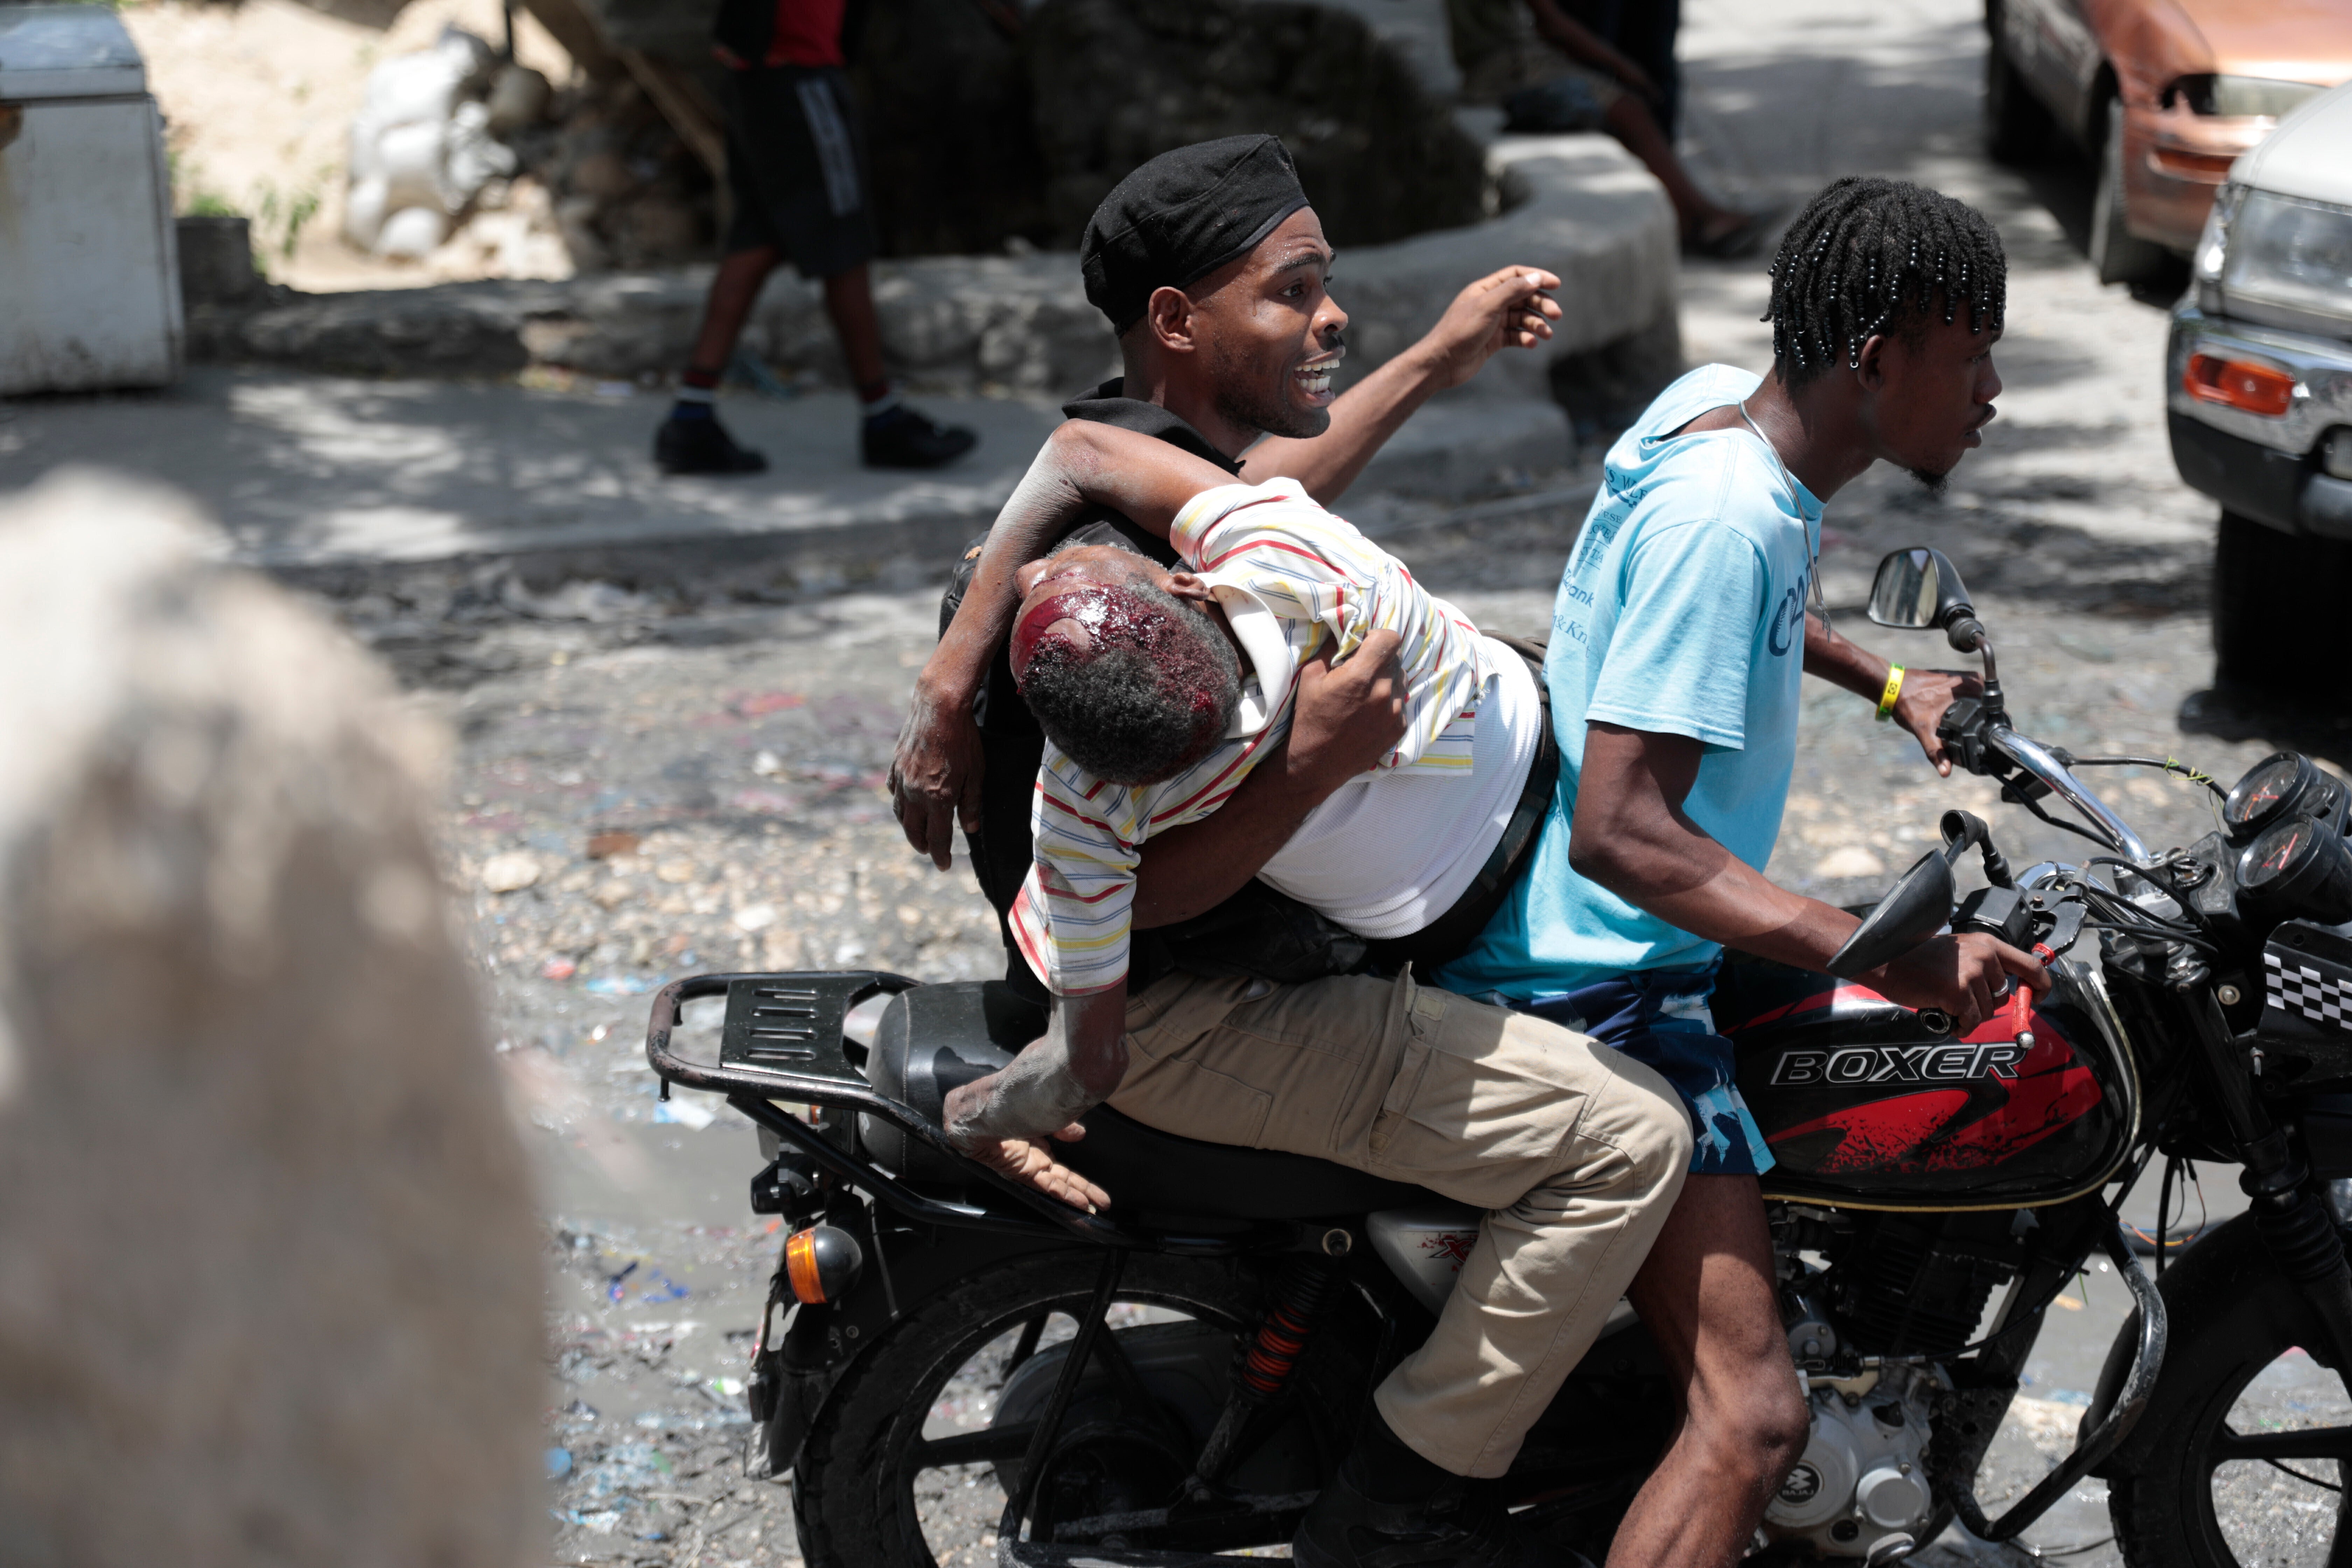 HAITÍ-KENIA VIOLENCIA